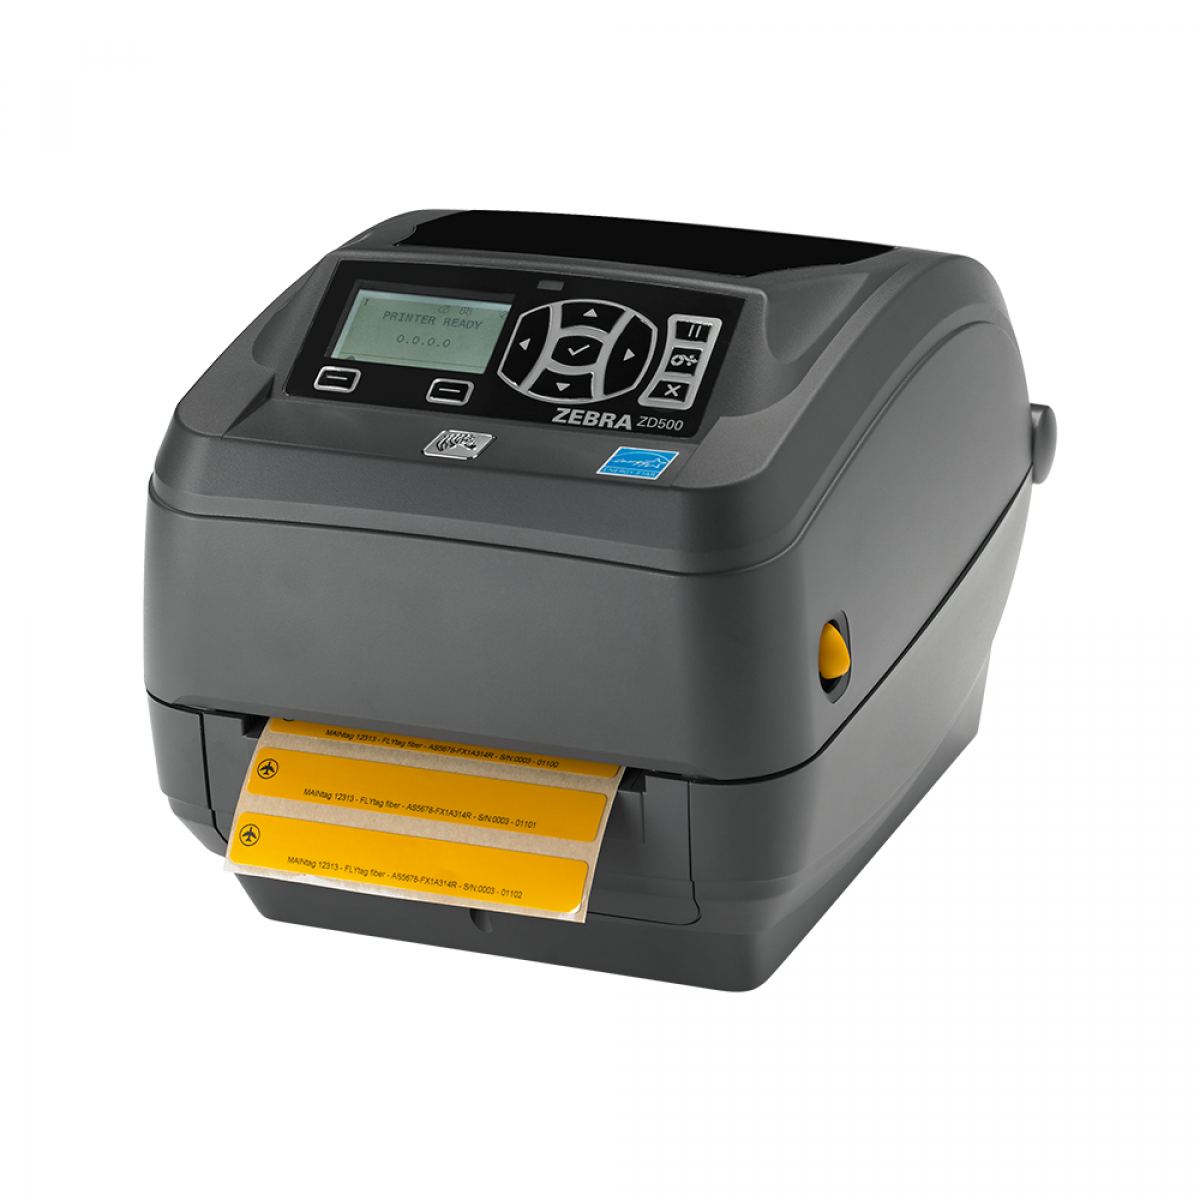 Zebra ZD500 desktop label printer